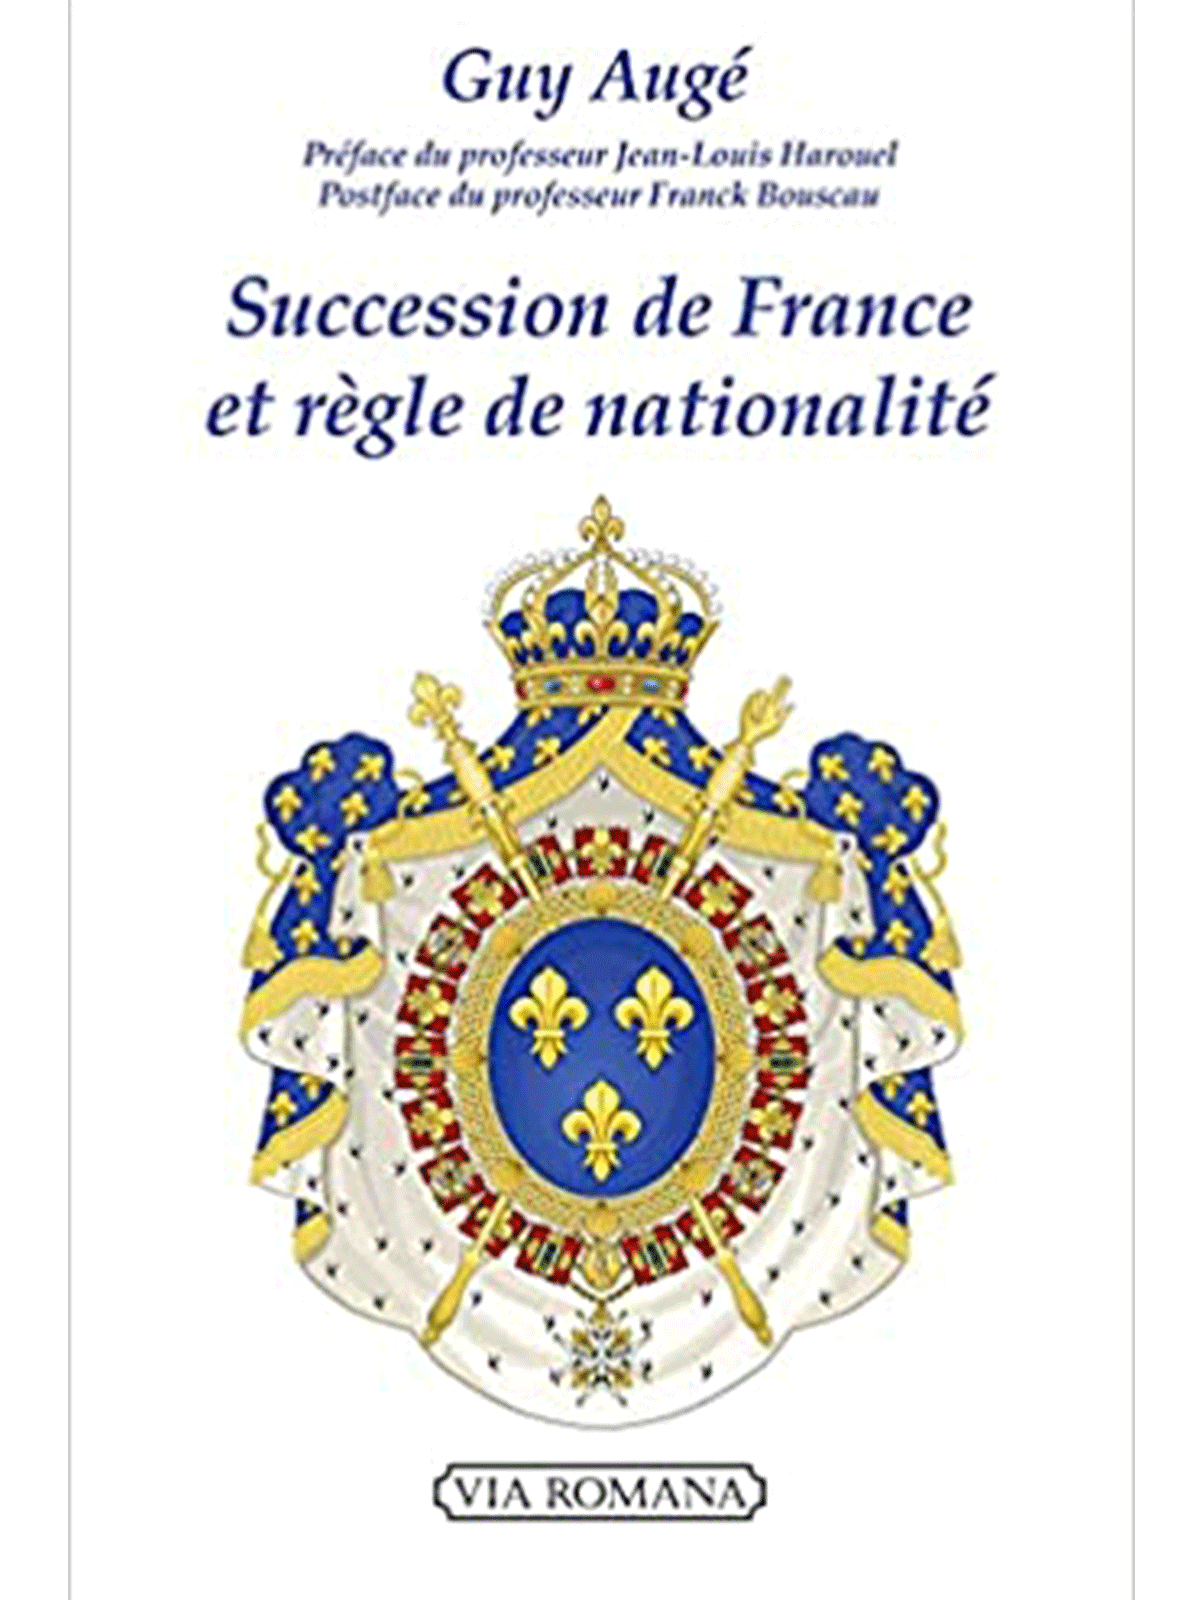 Guy Augé : Succession de France et règle de nationalité